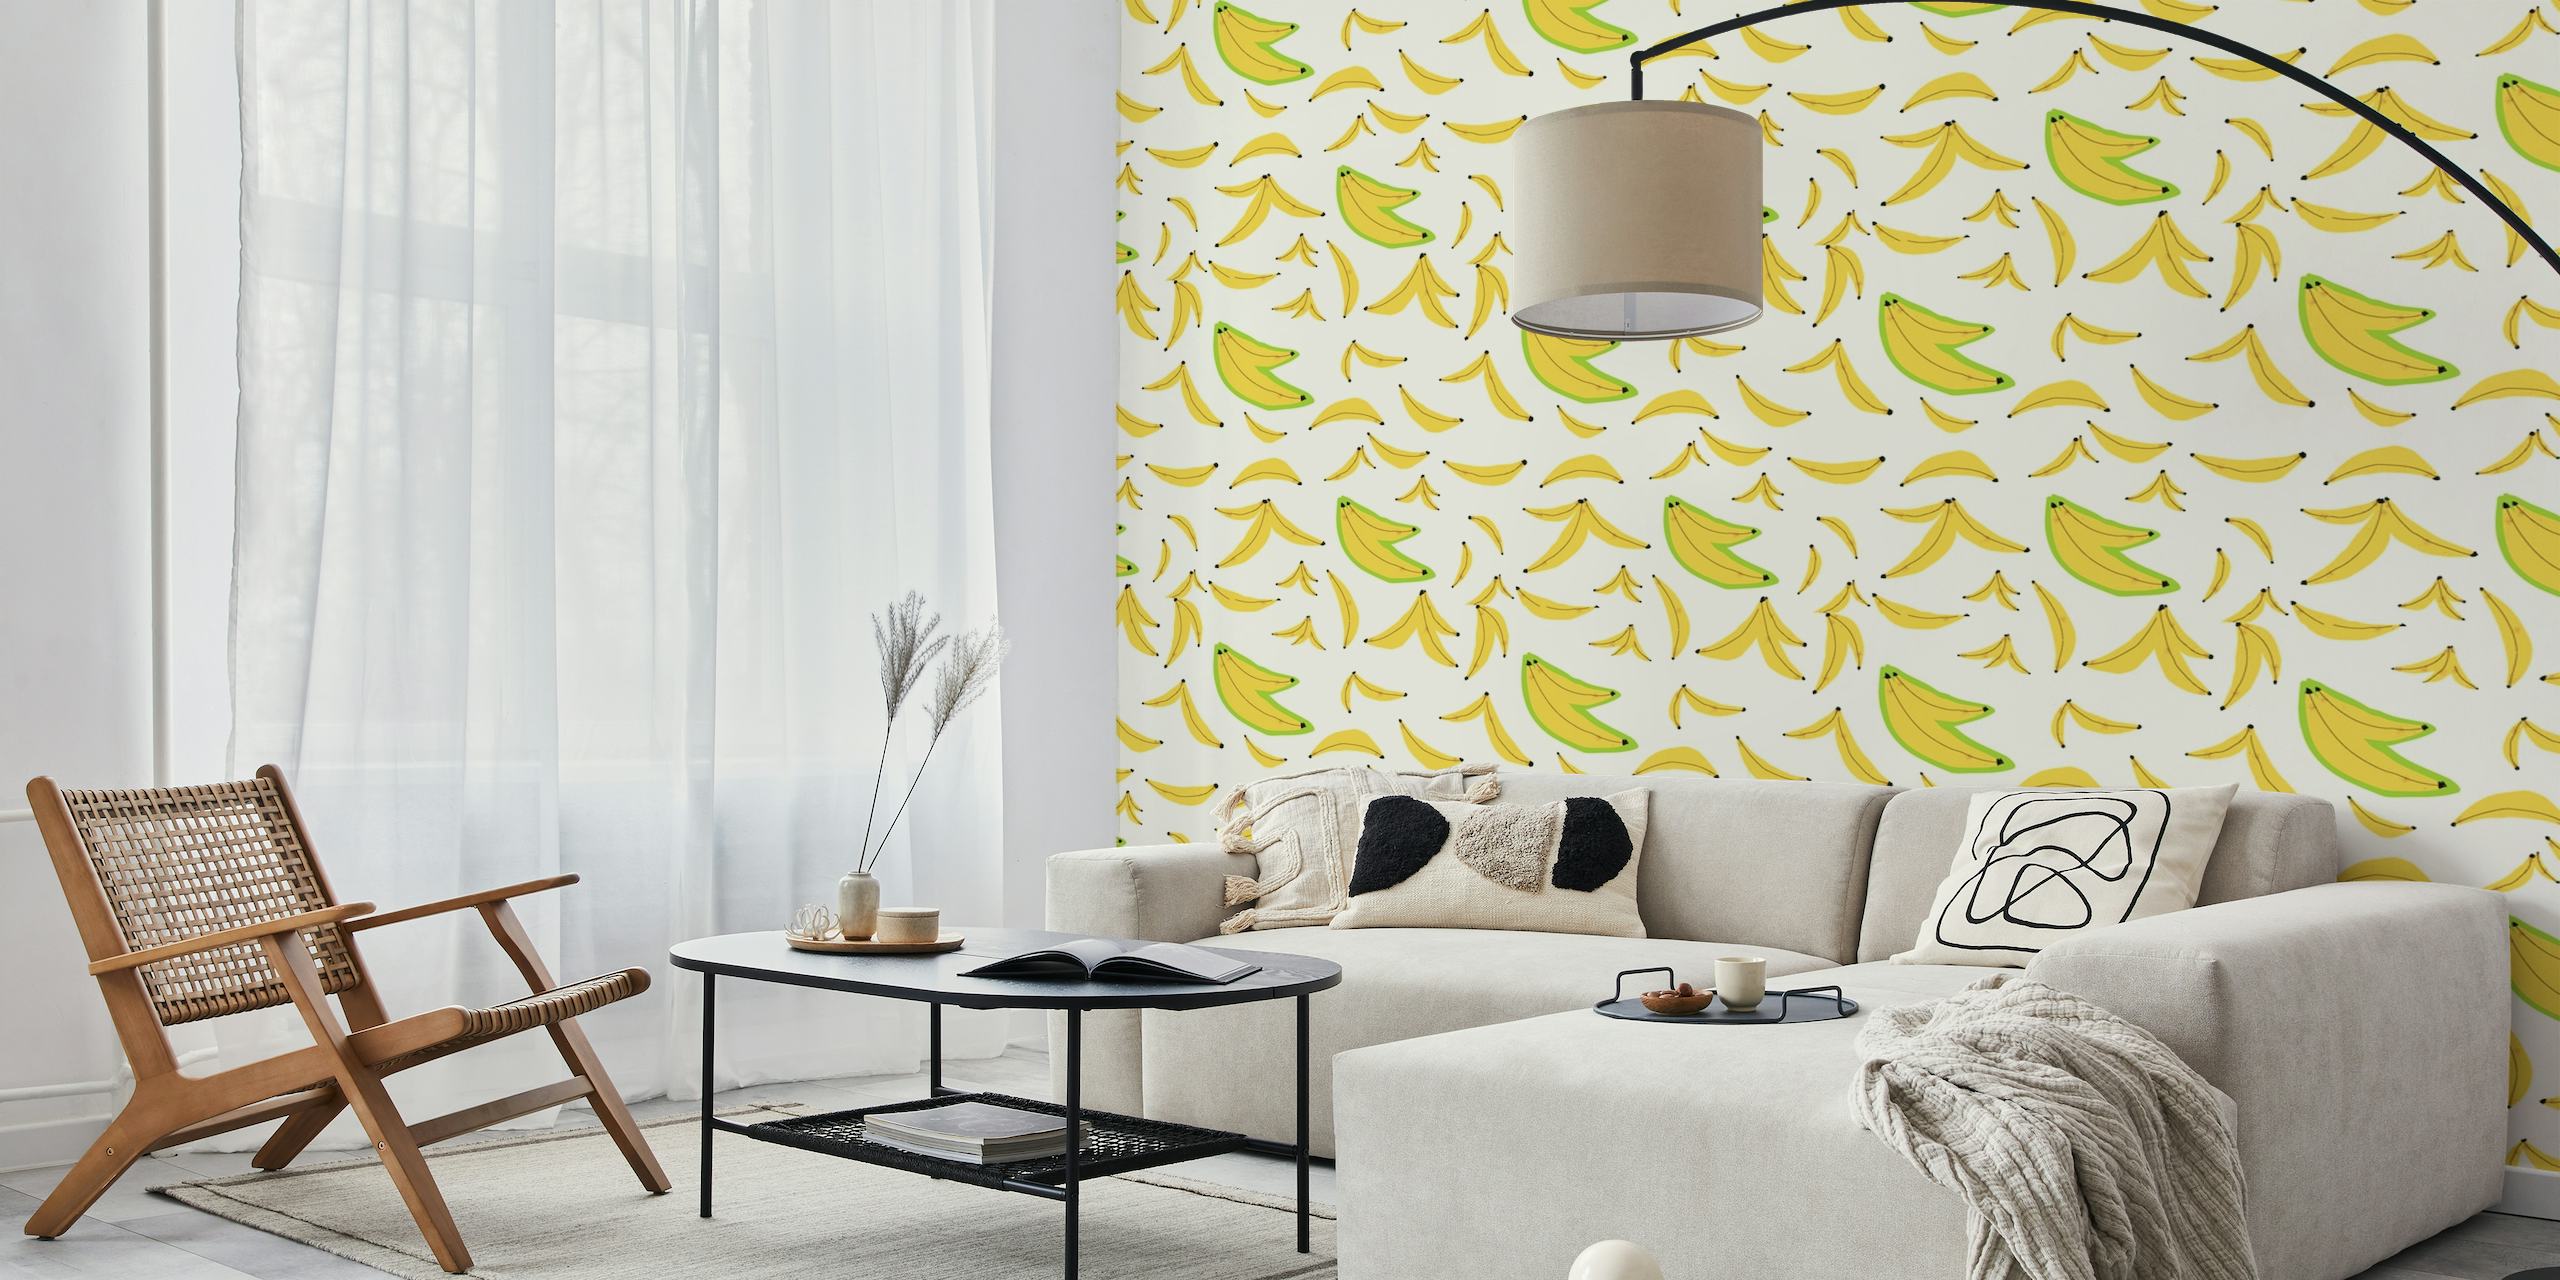 Bananas pattern behang